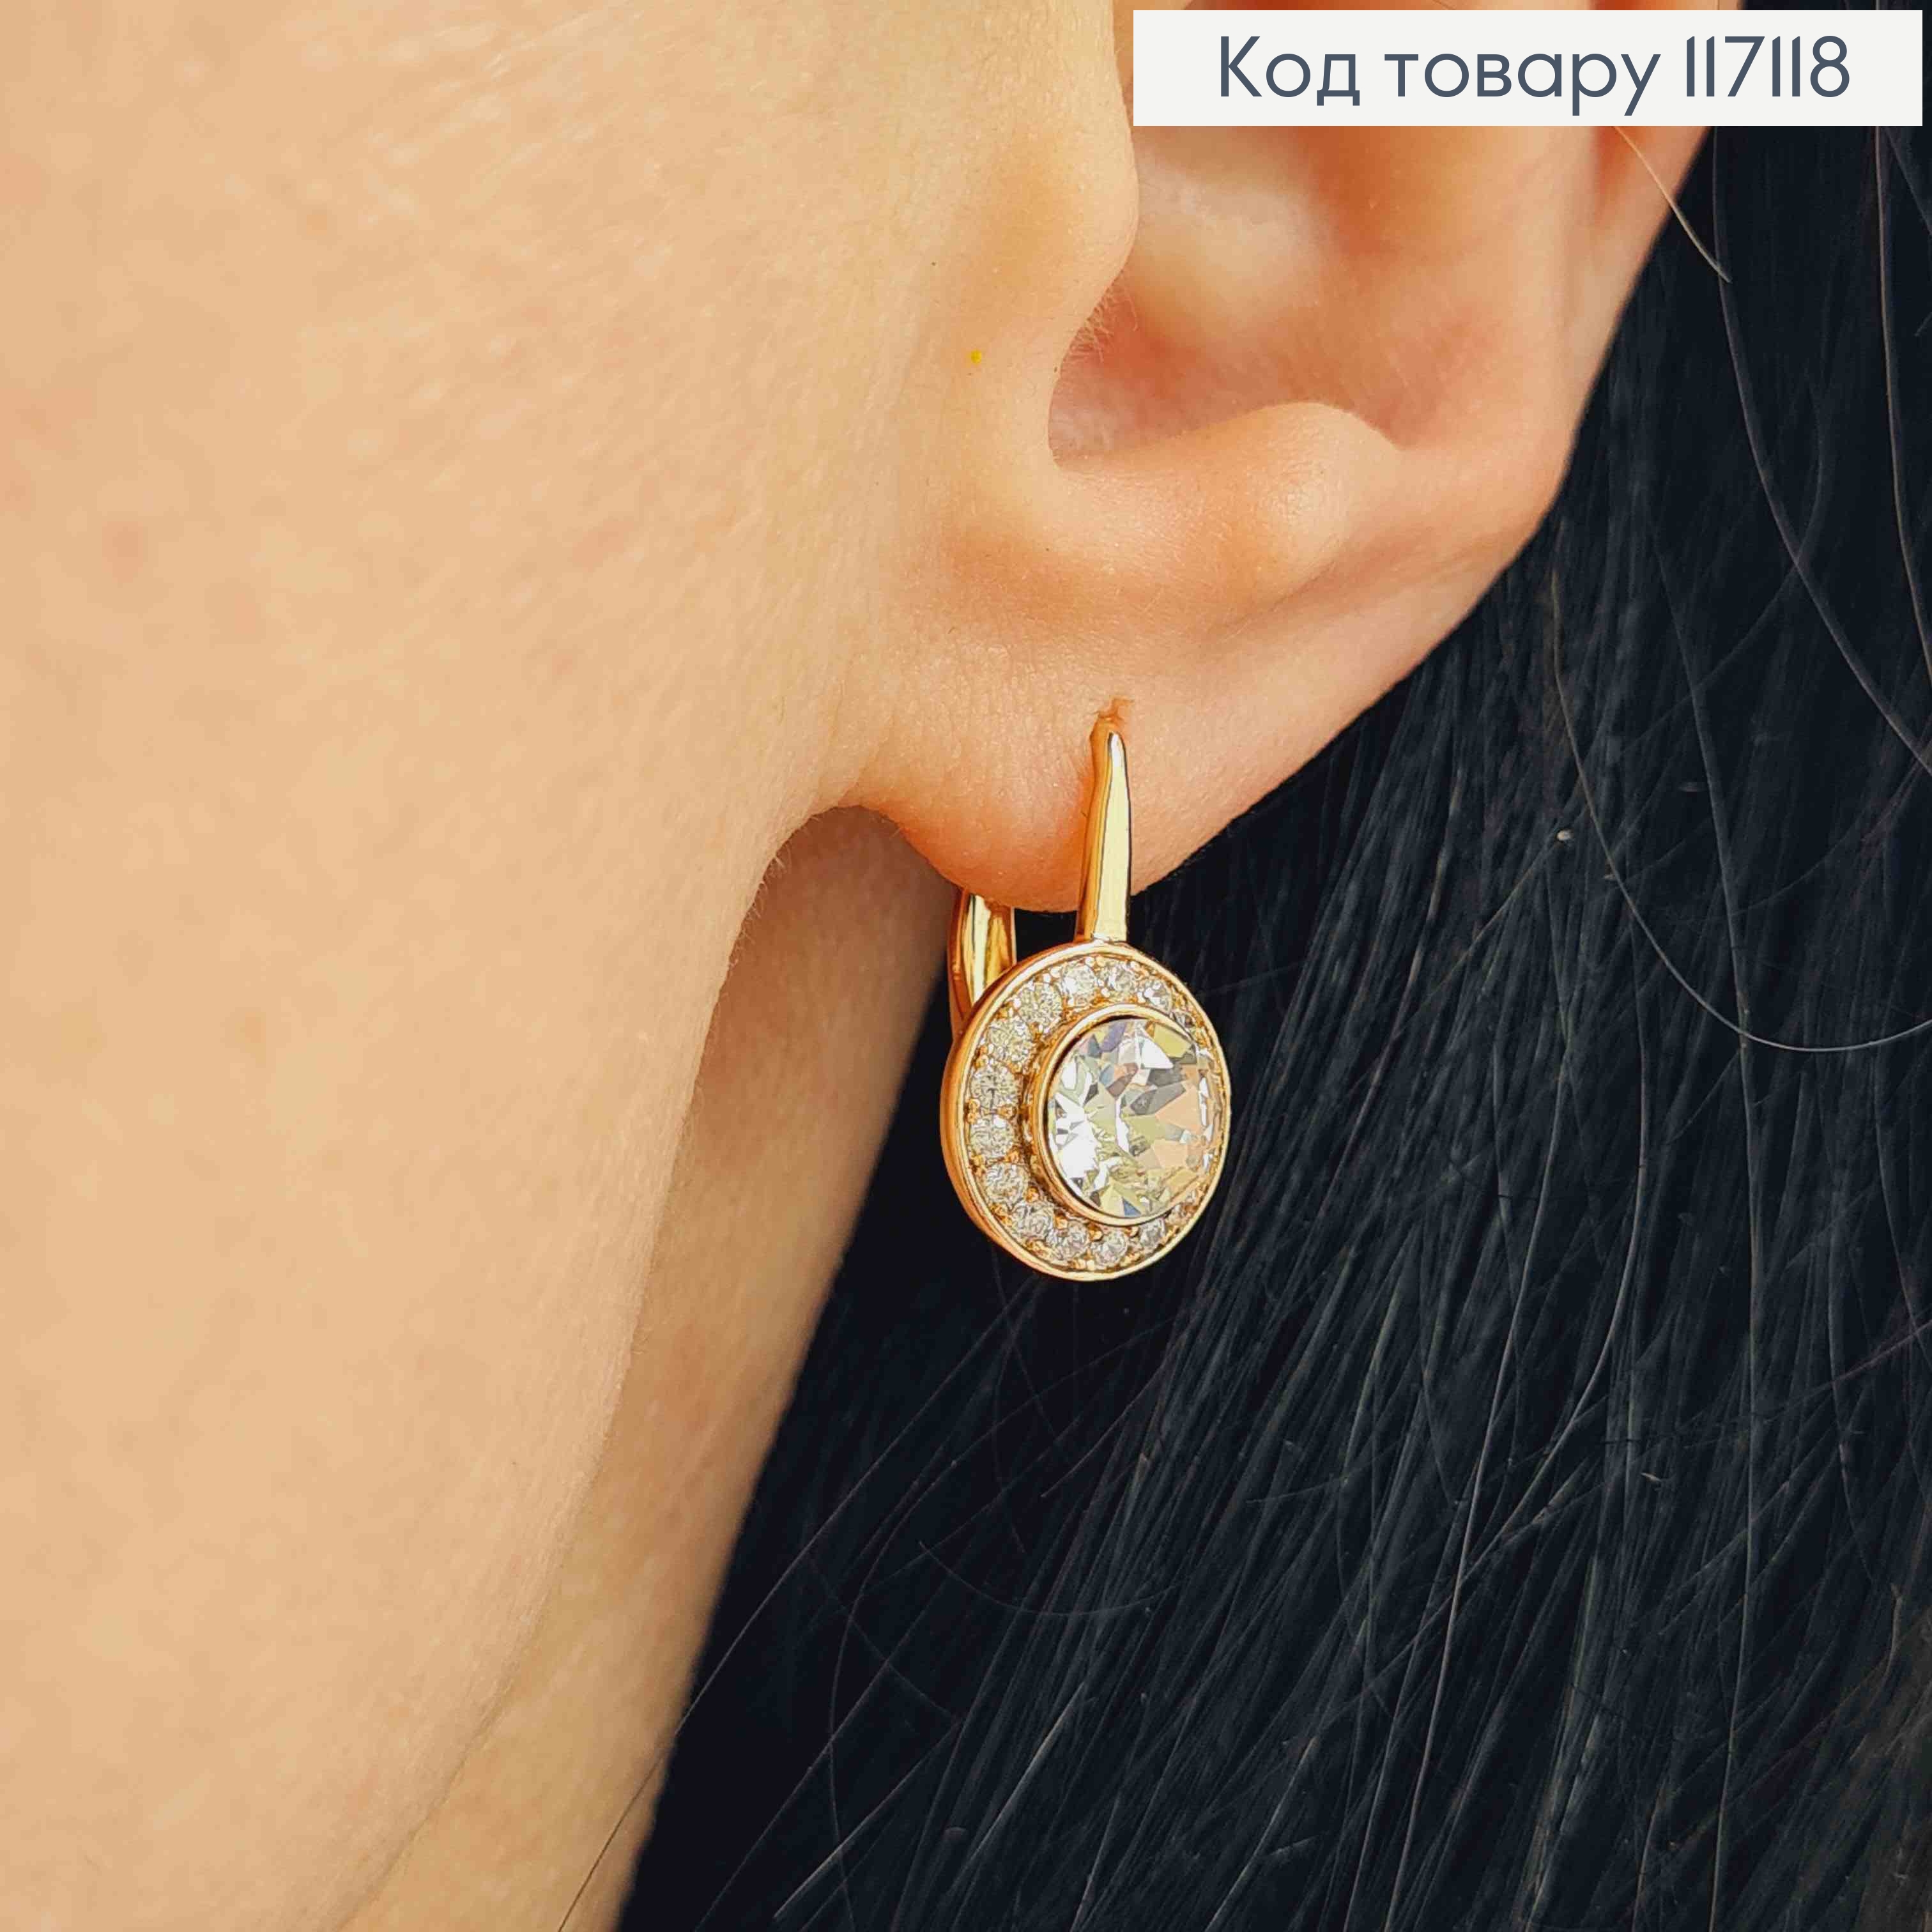 Сережки З круглим камінчиком Білого кольору, Сваровскі, 1,7см, англ. заст. Xuping 18К 117118 фото 2